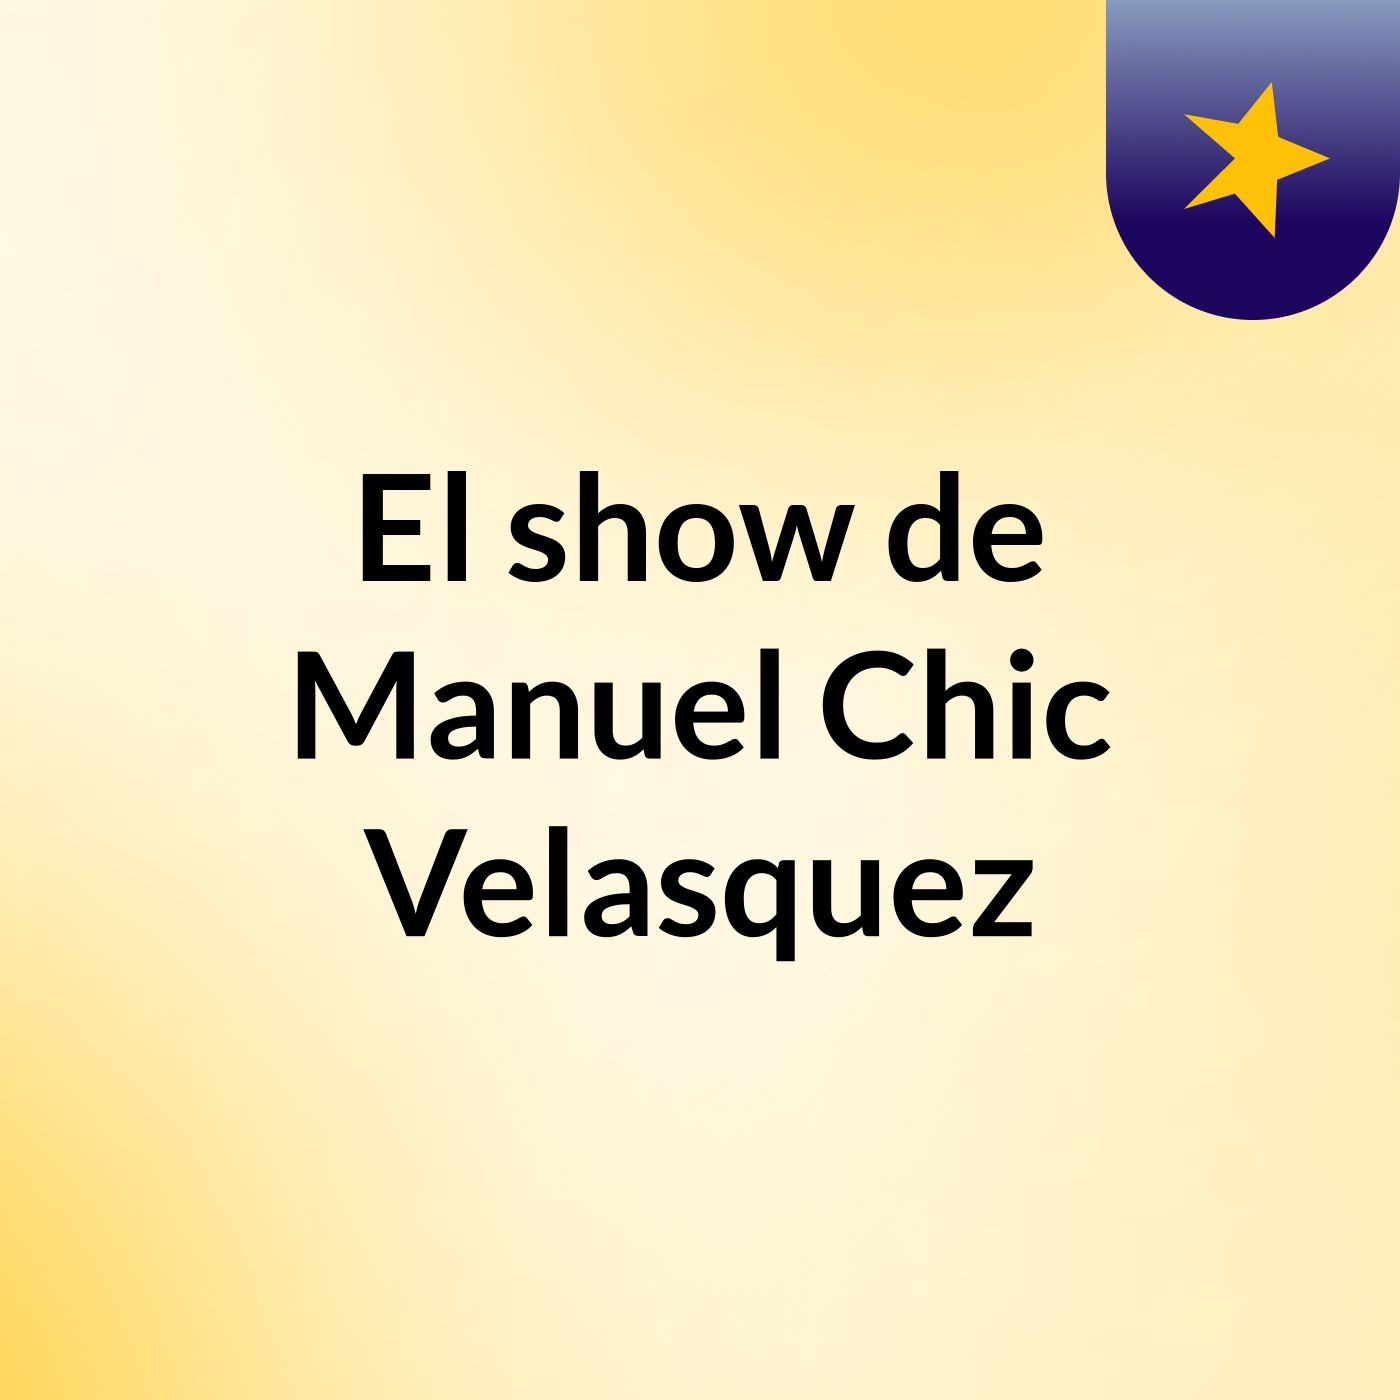 Episodio 5 - El show de Manuel Chic Velasquez